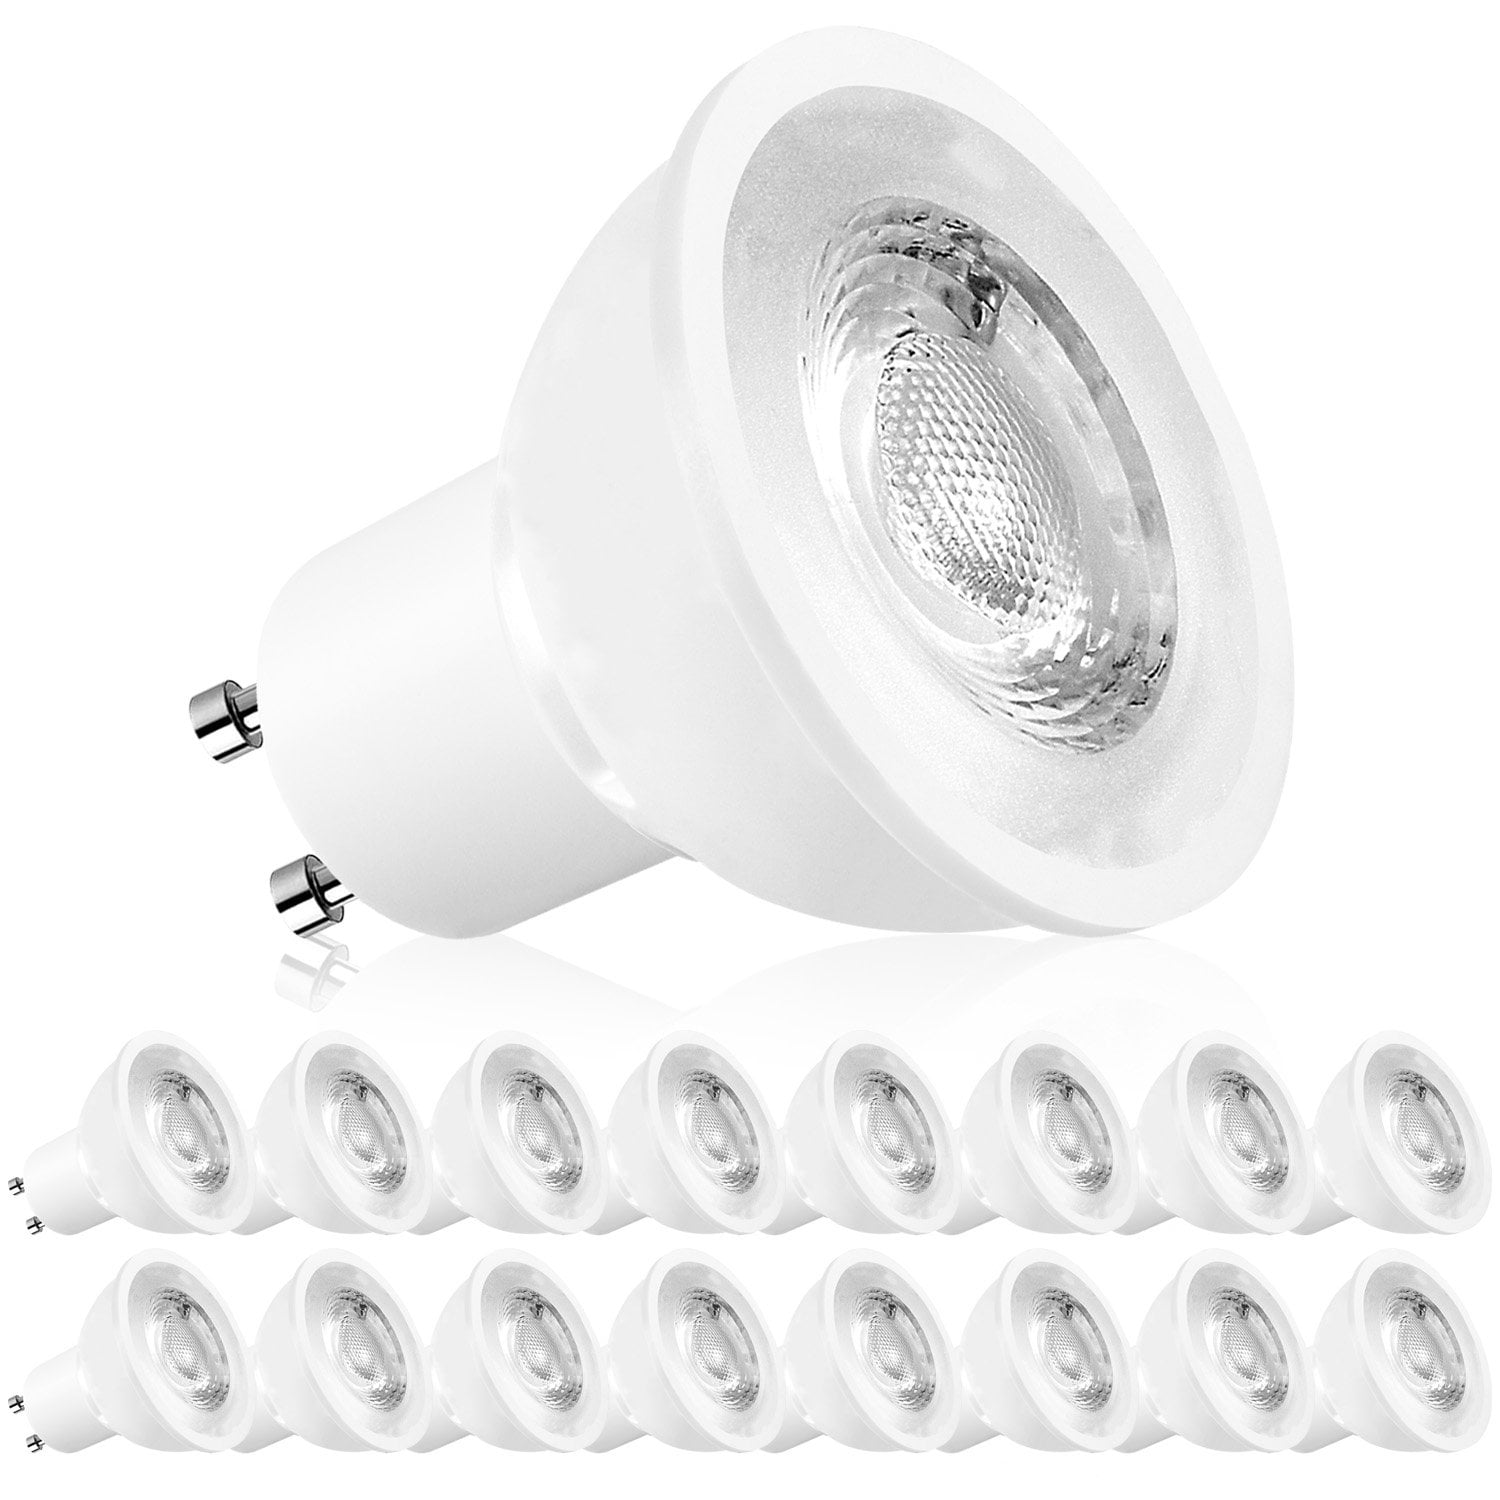 MR16 GU10 Dimmable LED Light Bulbs, 50W Halogen Equivalent, 2700K White, 500 Lumens, 16-Pack -